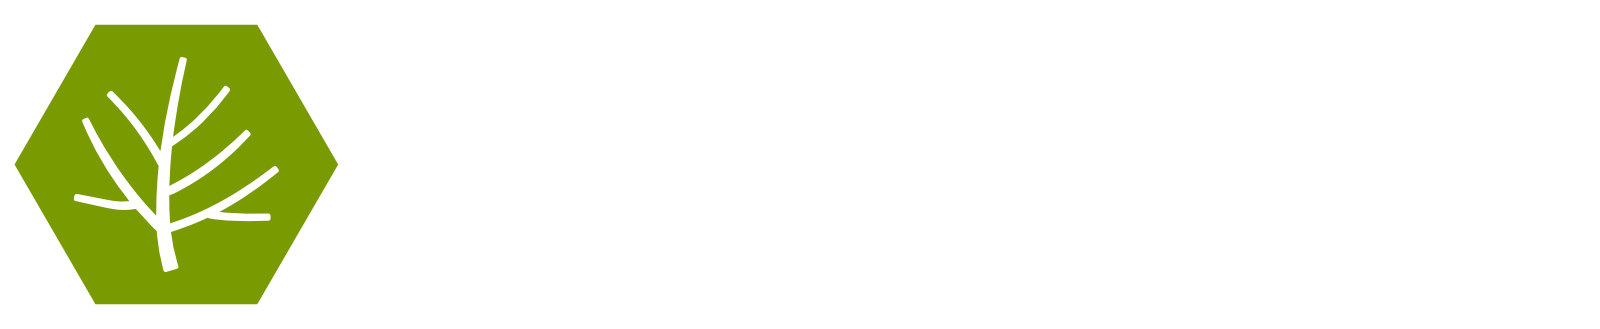 Bugtree logo